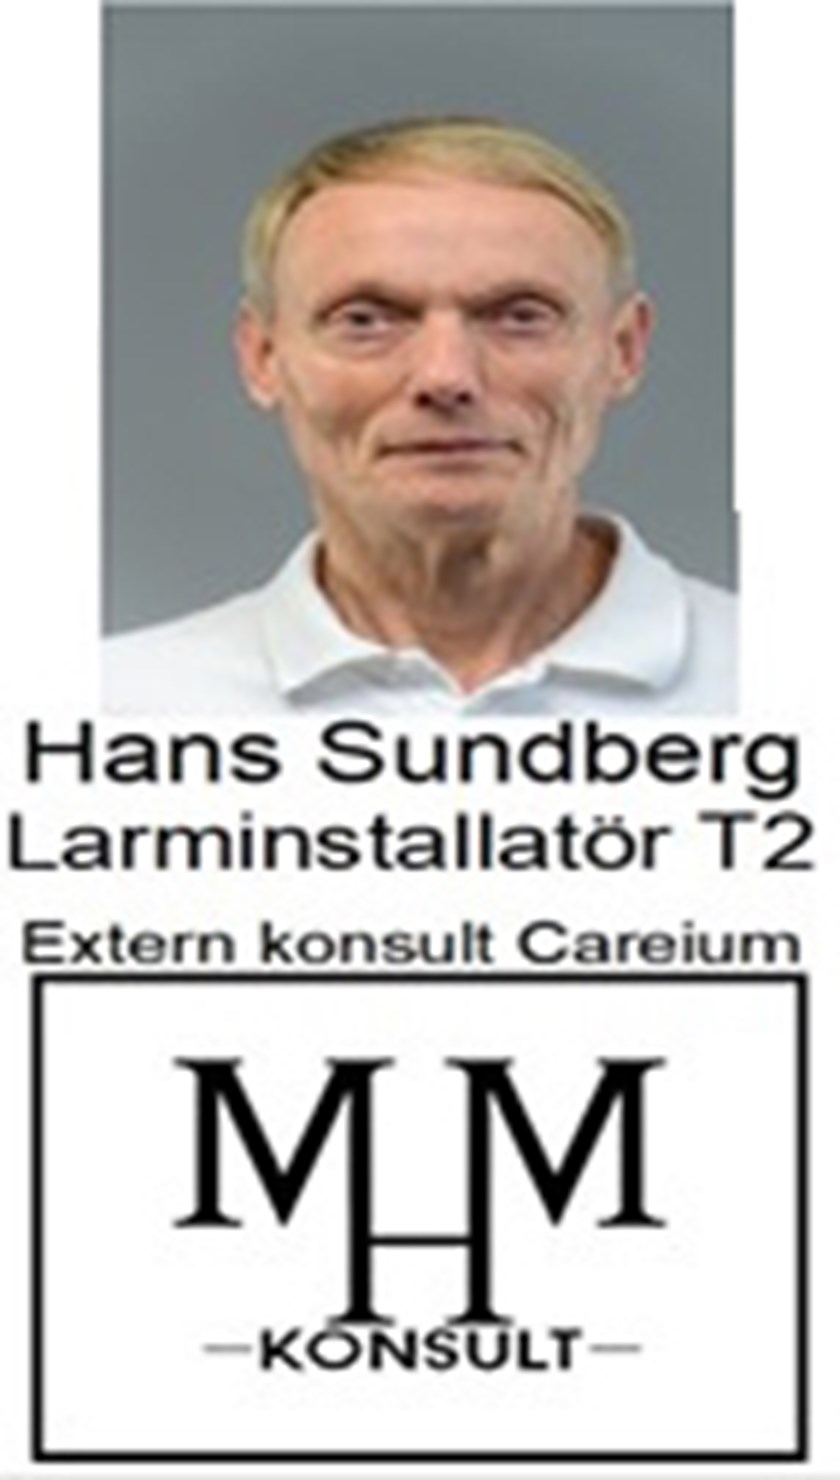 Hans Sundberg, Larminstallatör T2.